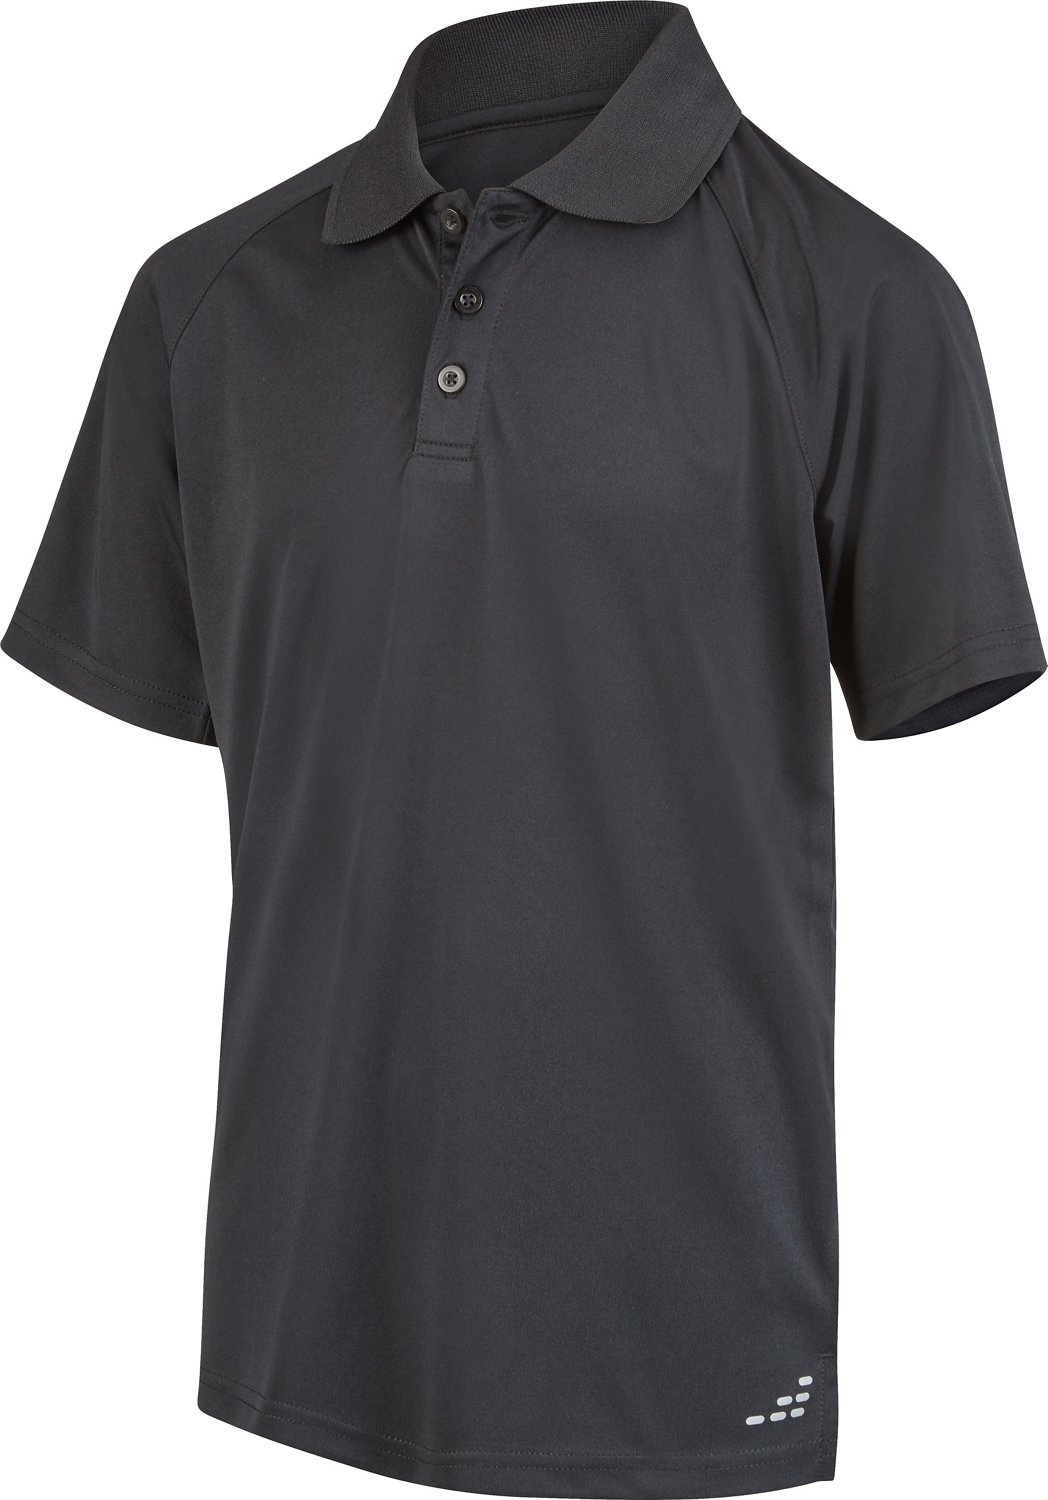 BCG Boys' Solid Short Sleeve Polo Shirt | Academy